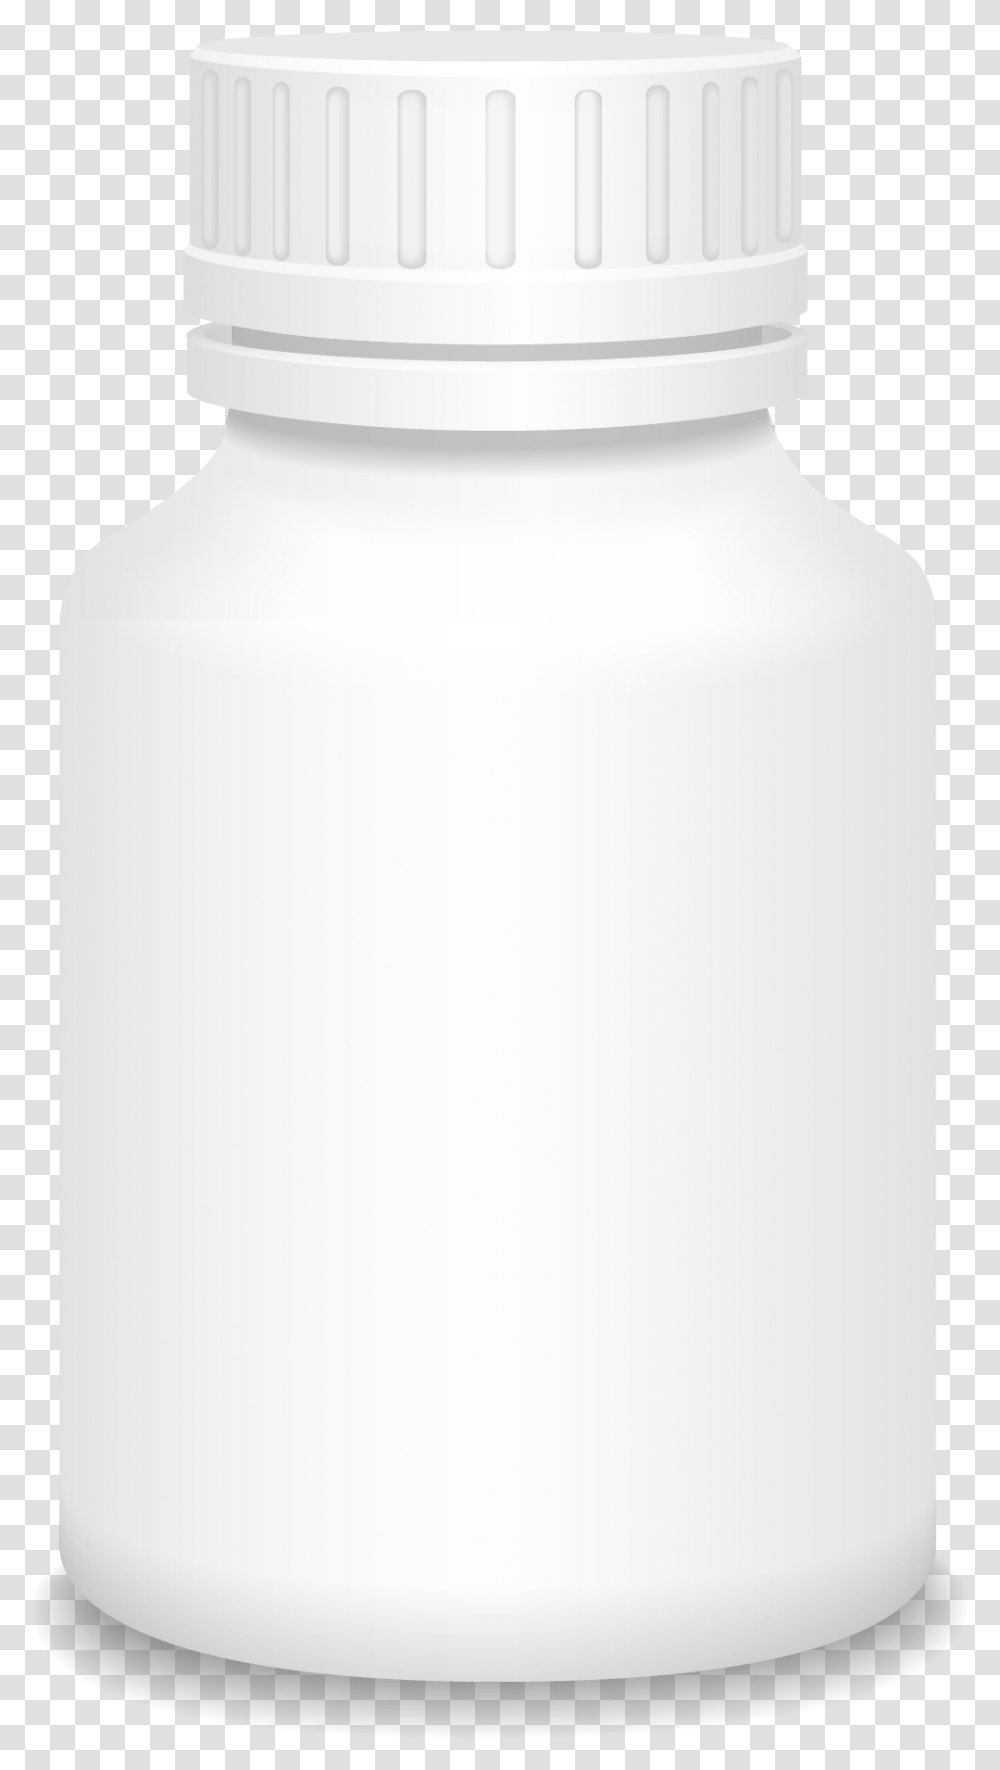 White Vector Medicine Bottle Download Plastic Bottle, Jar, Lamp, Beverage, Drink Transparent Png